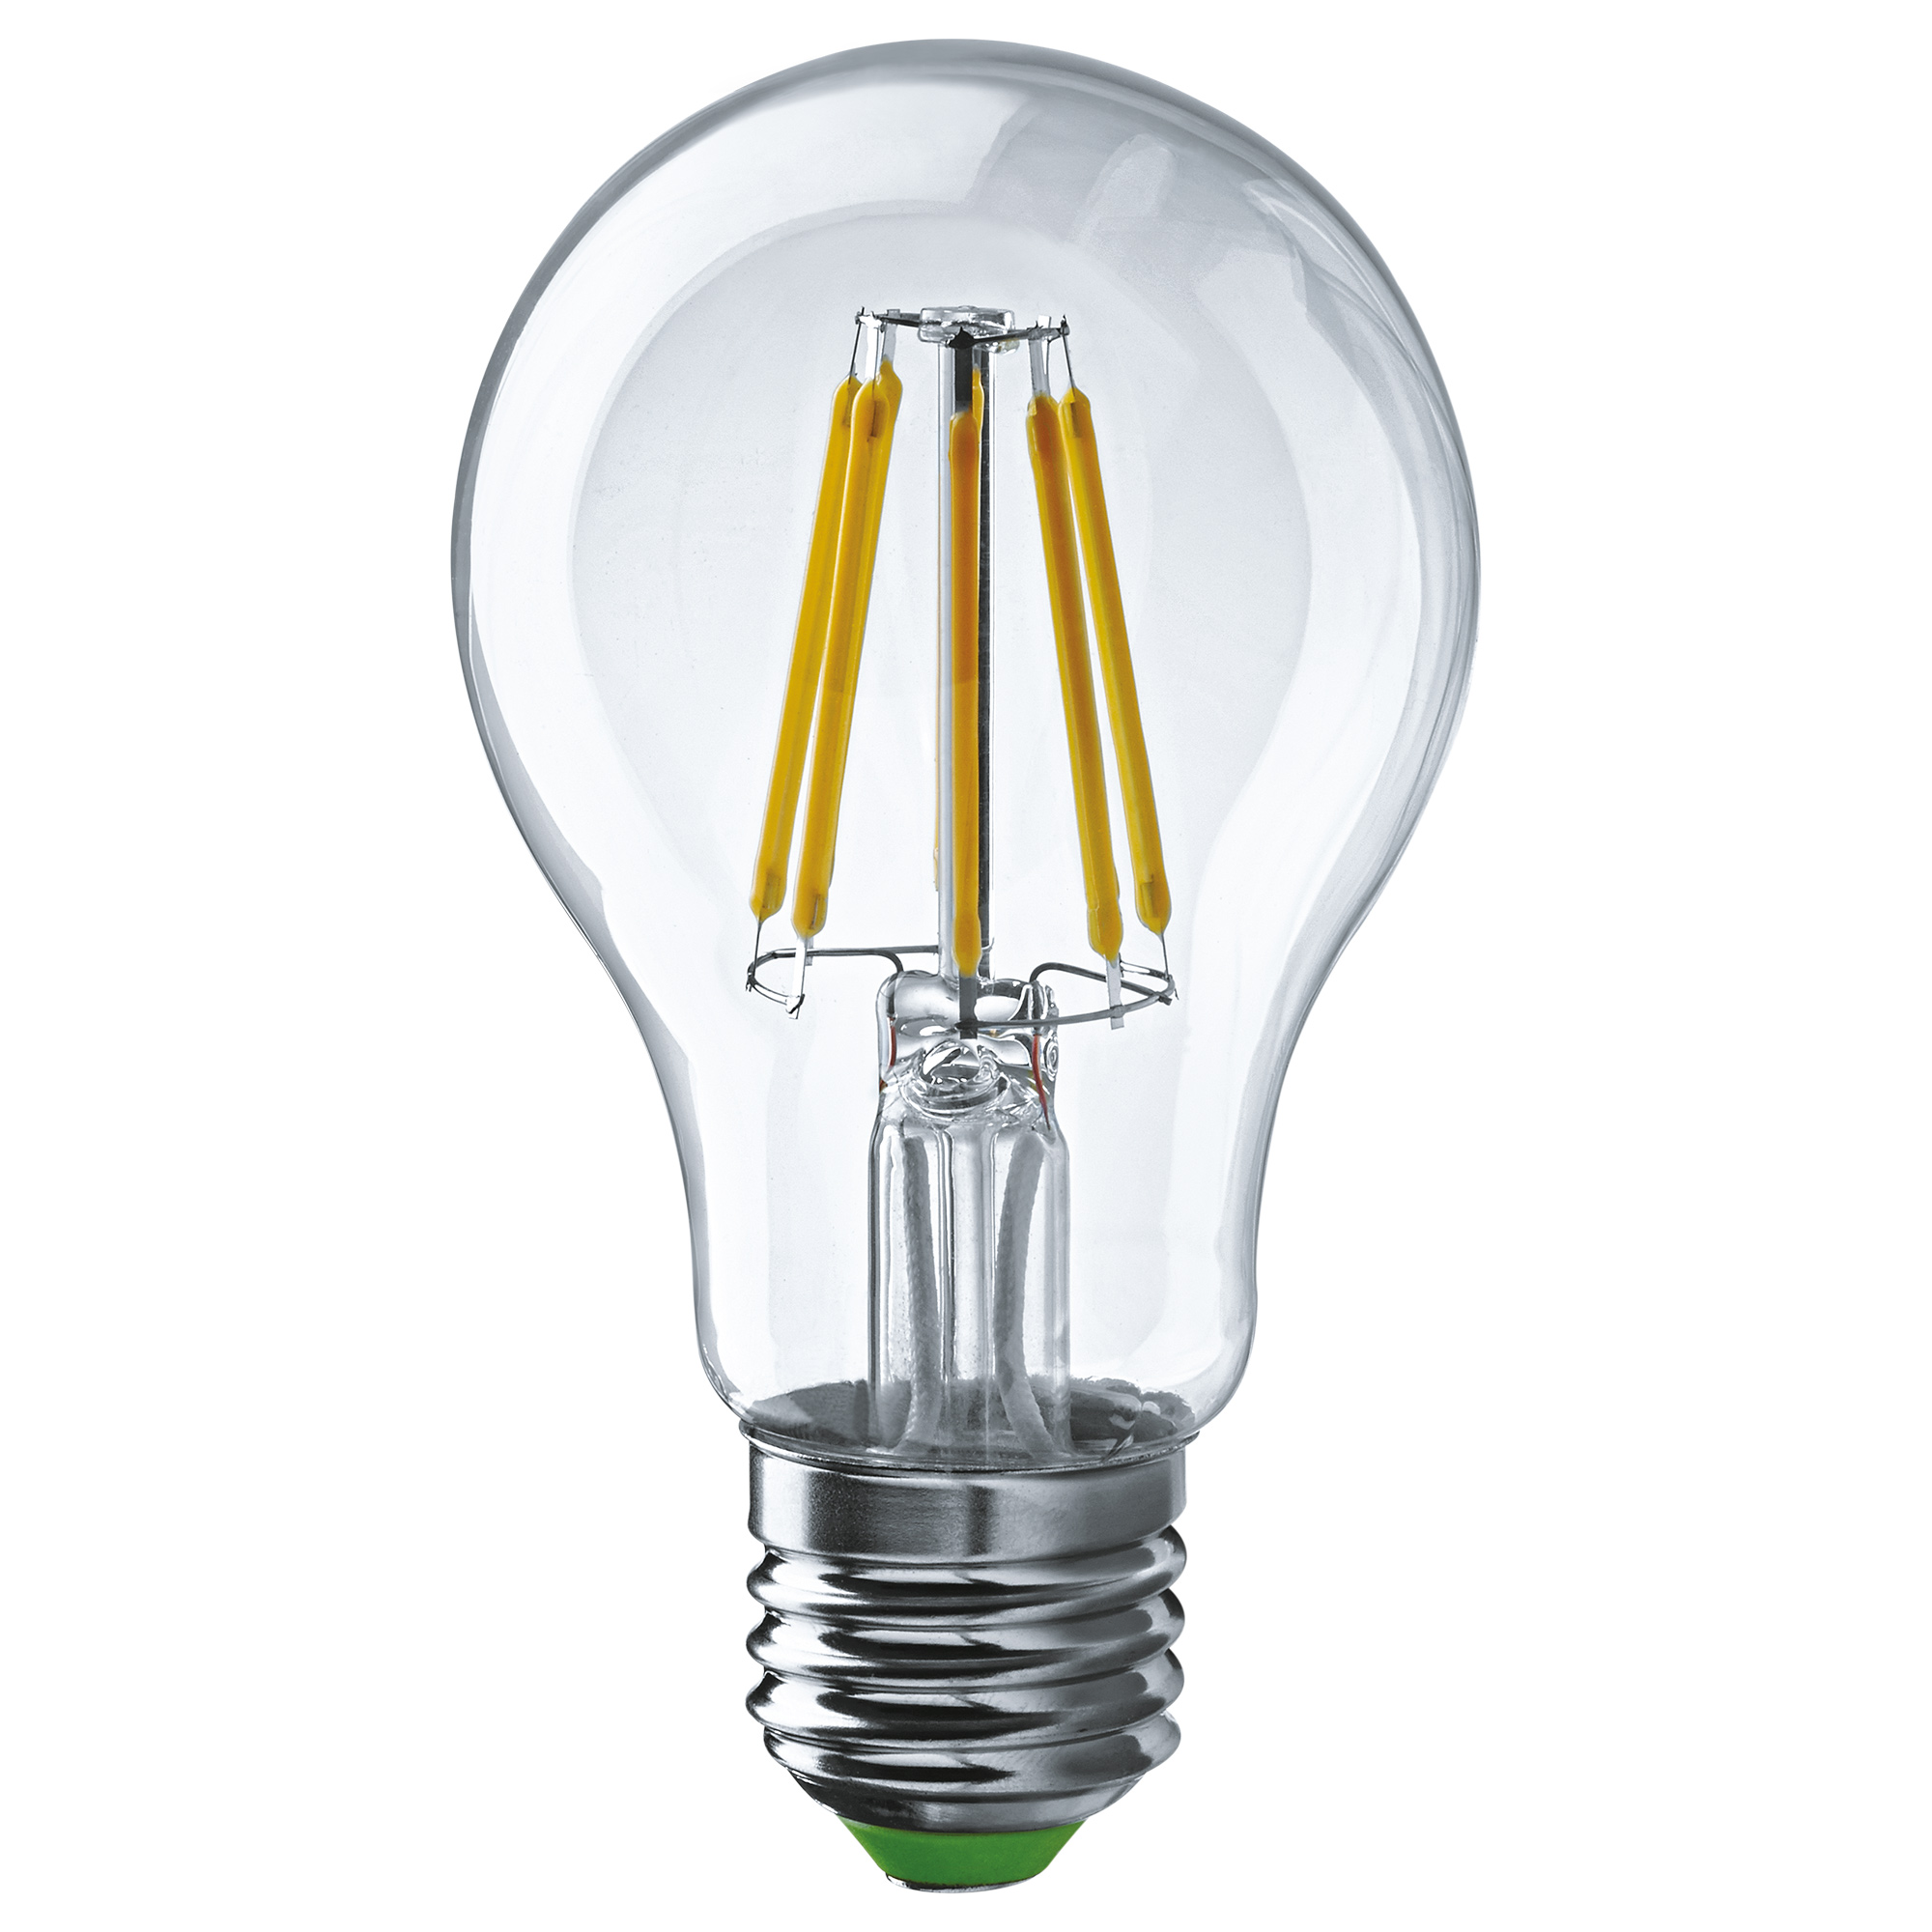 Лампа светодиодная Navigator груша прозрачная 8Вт цоколь E27 (теплый свет) лампа светодиодная navigator шарик прозрачная 4вт цоколь e27 теплый свет